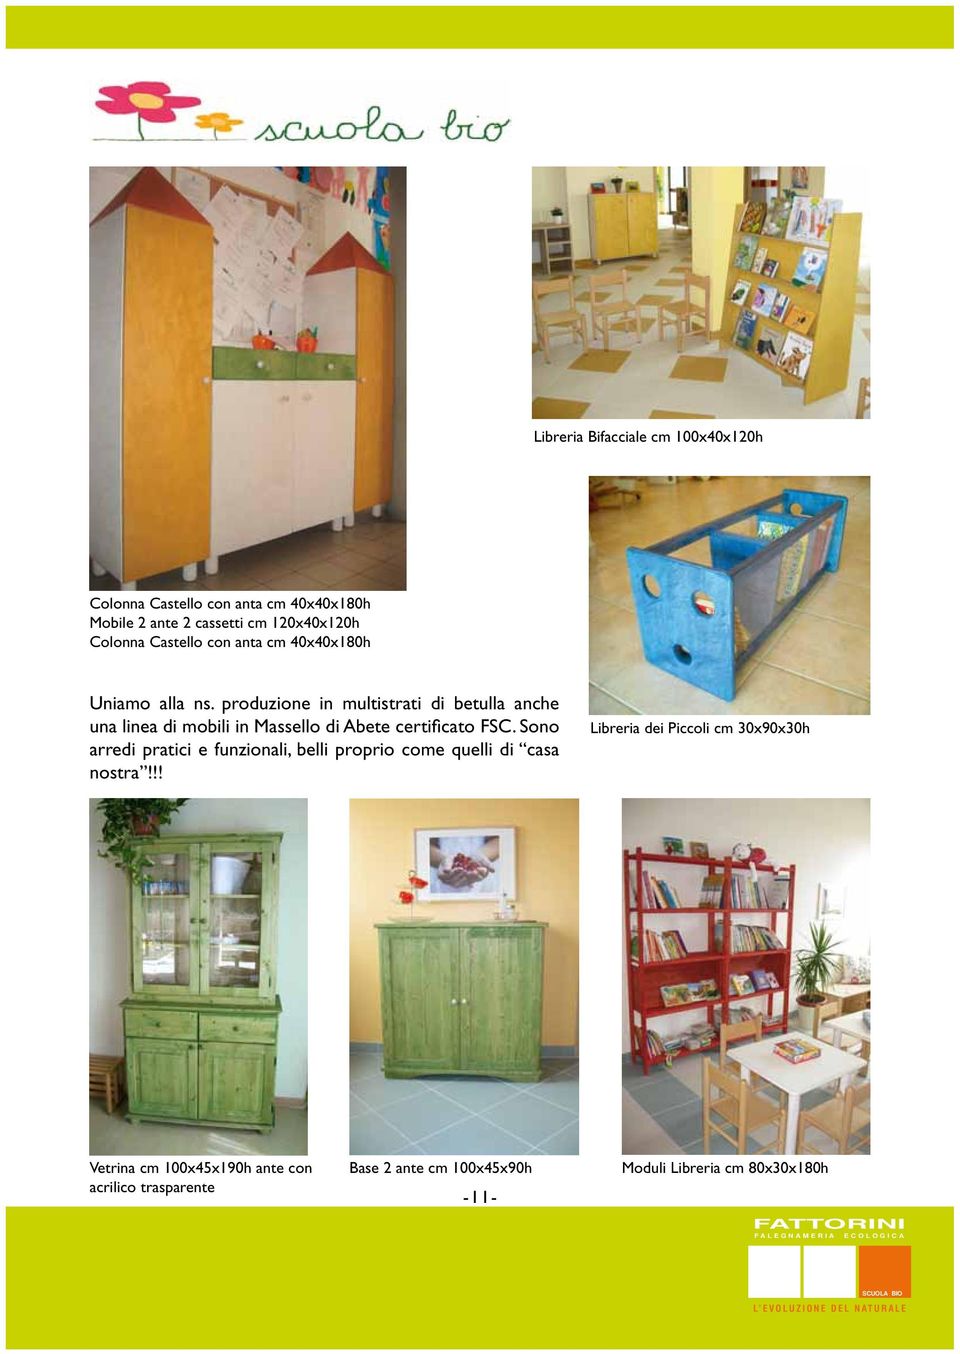 produzione in multistrati di betulla anche una linea di mobili in Massello di Abete certificato FSC.